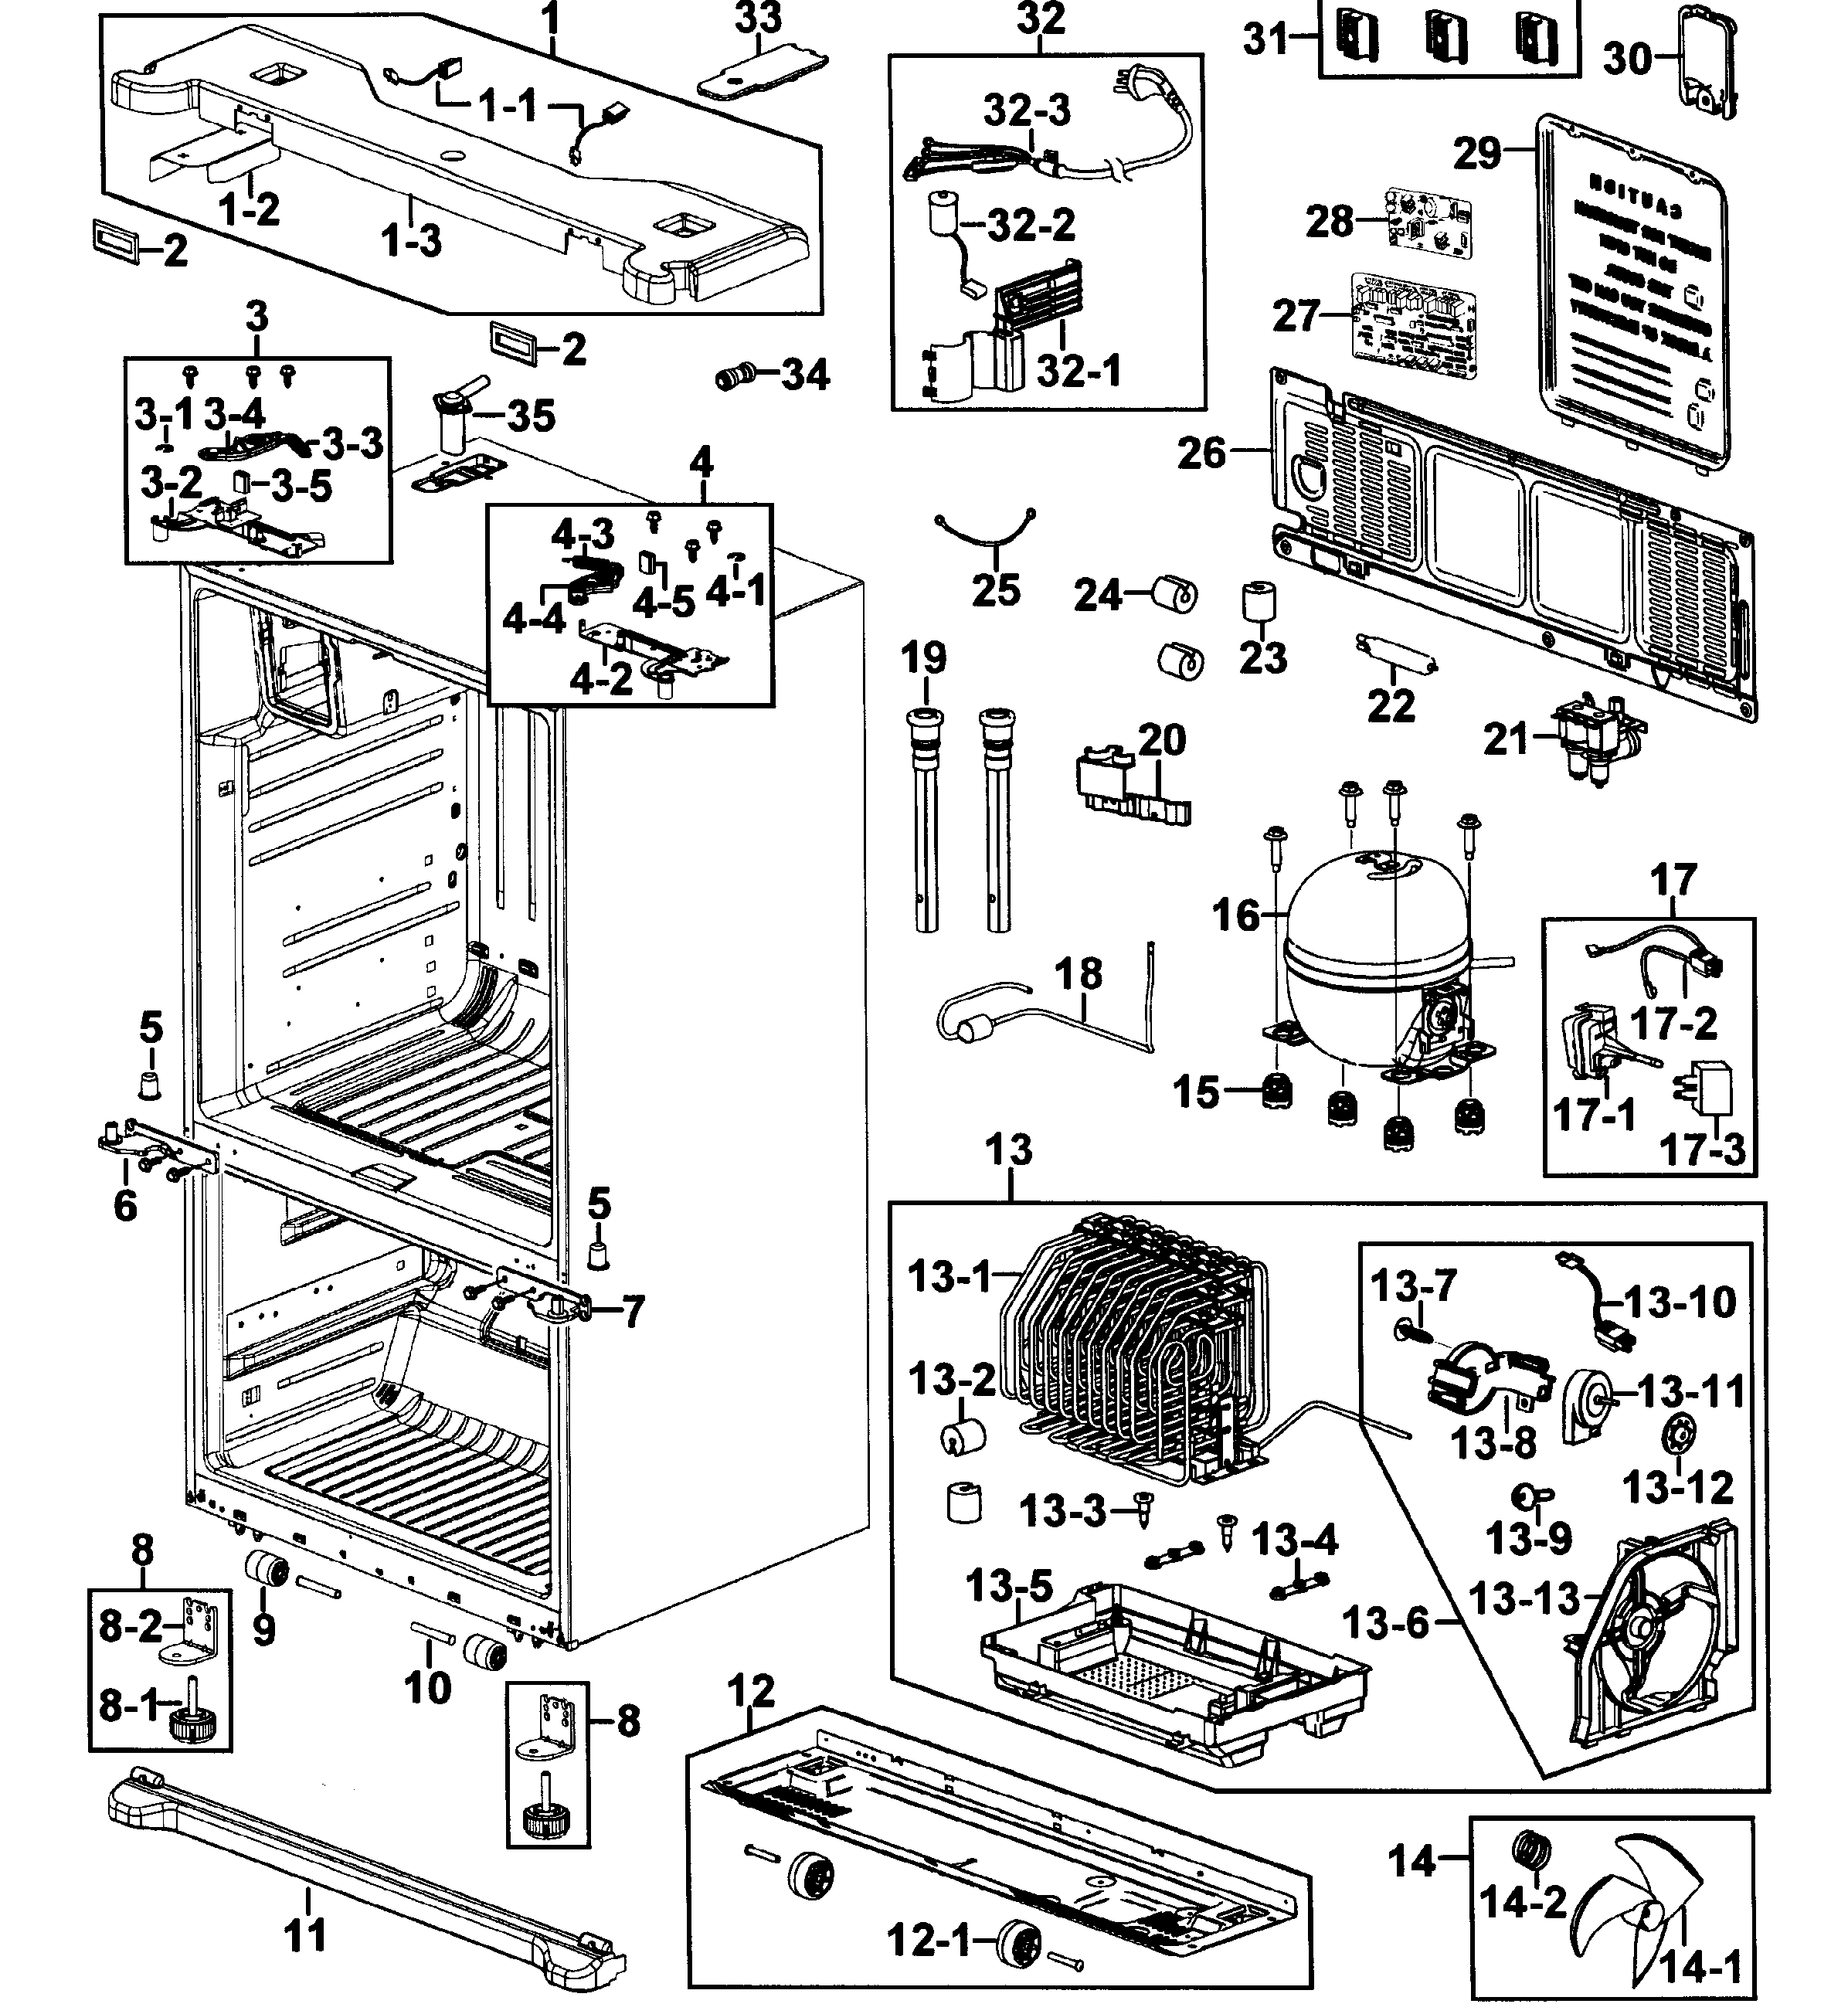 Samsung Refrigerator Parts Diagram